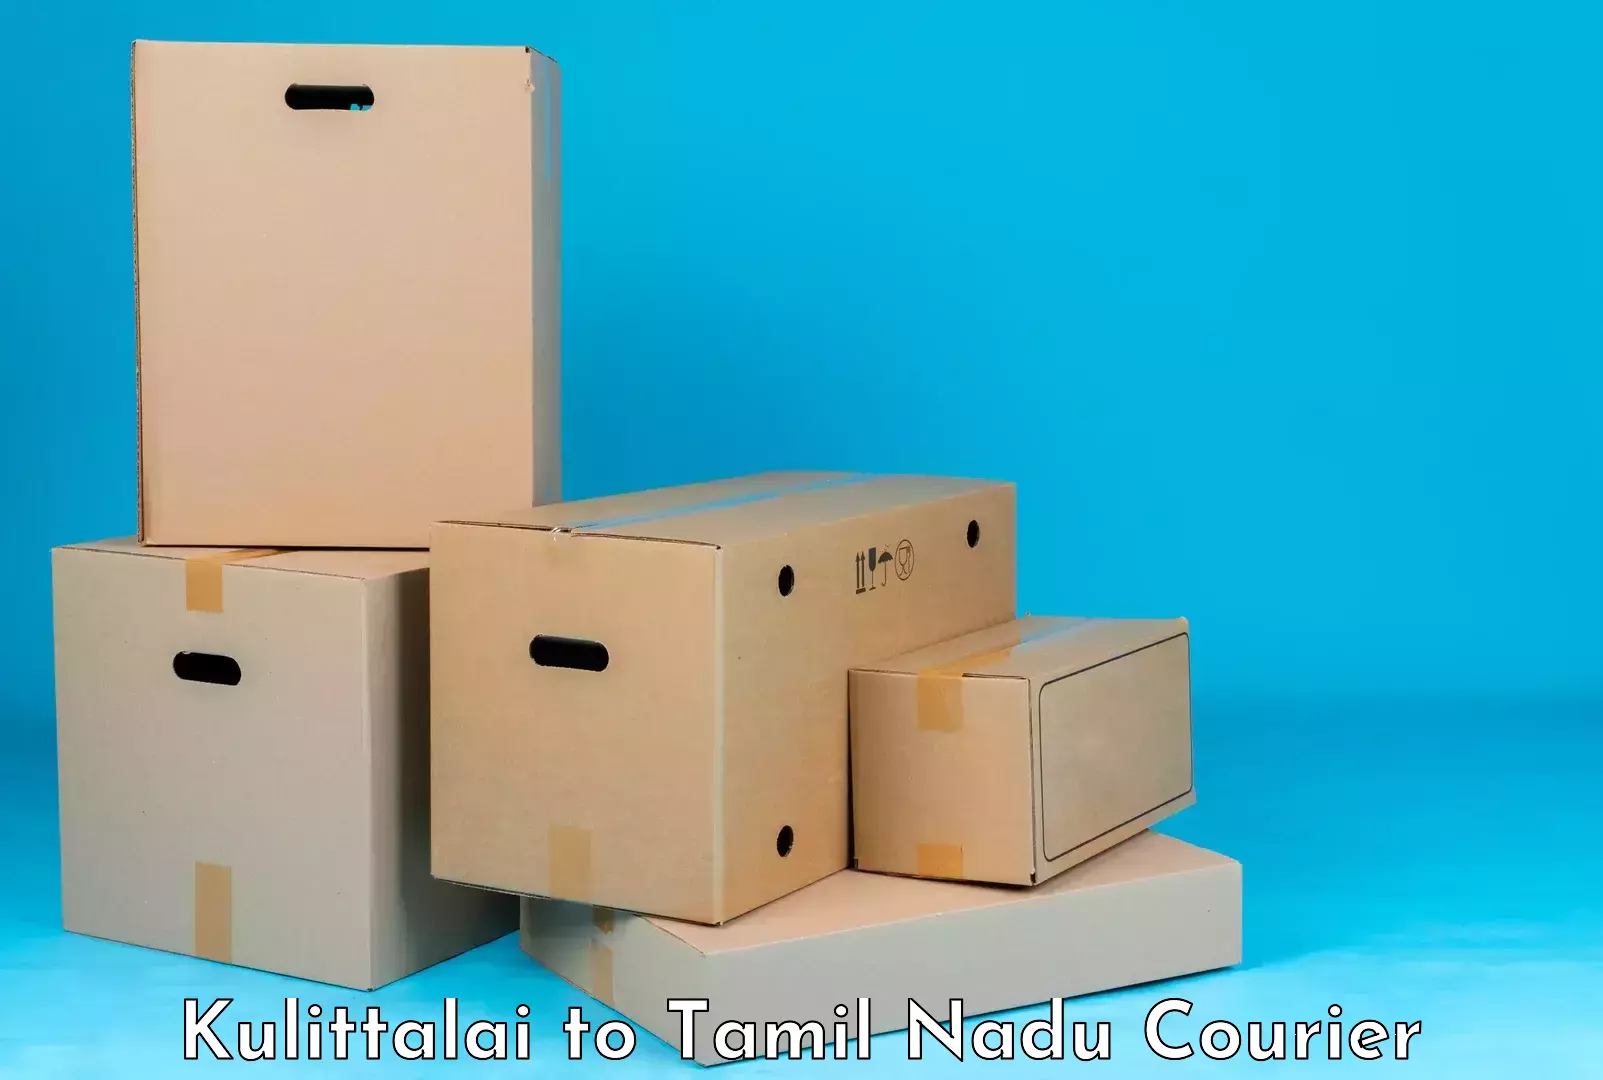 Luggage transit service Kulittalai to Tamil Nadu